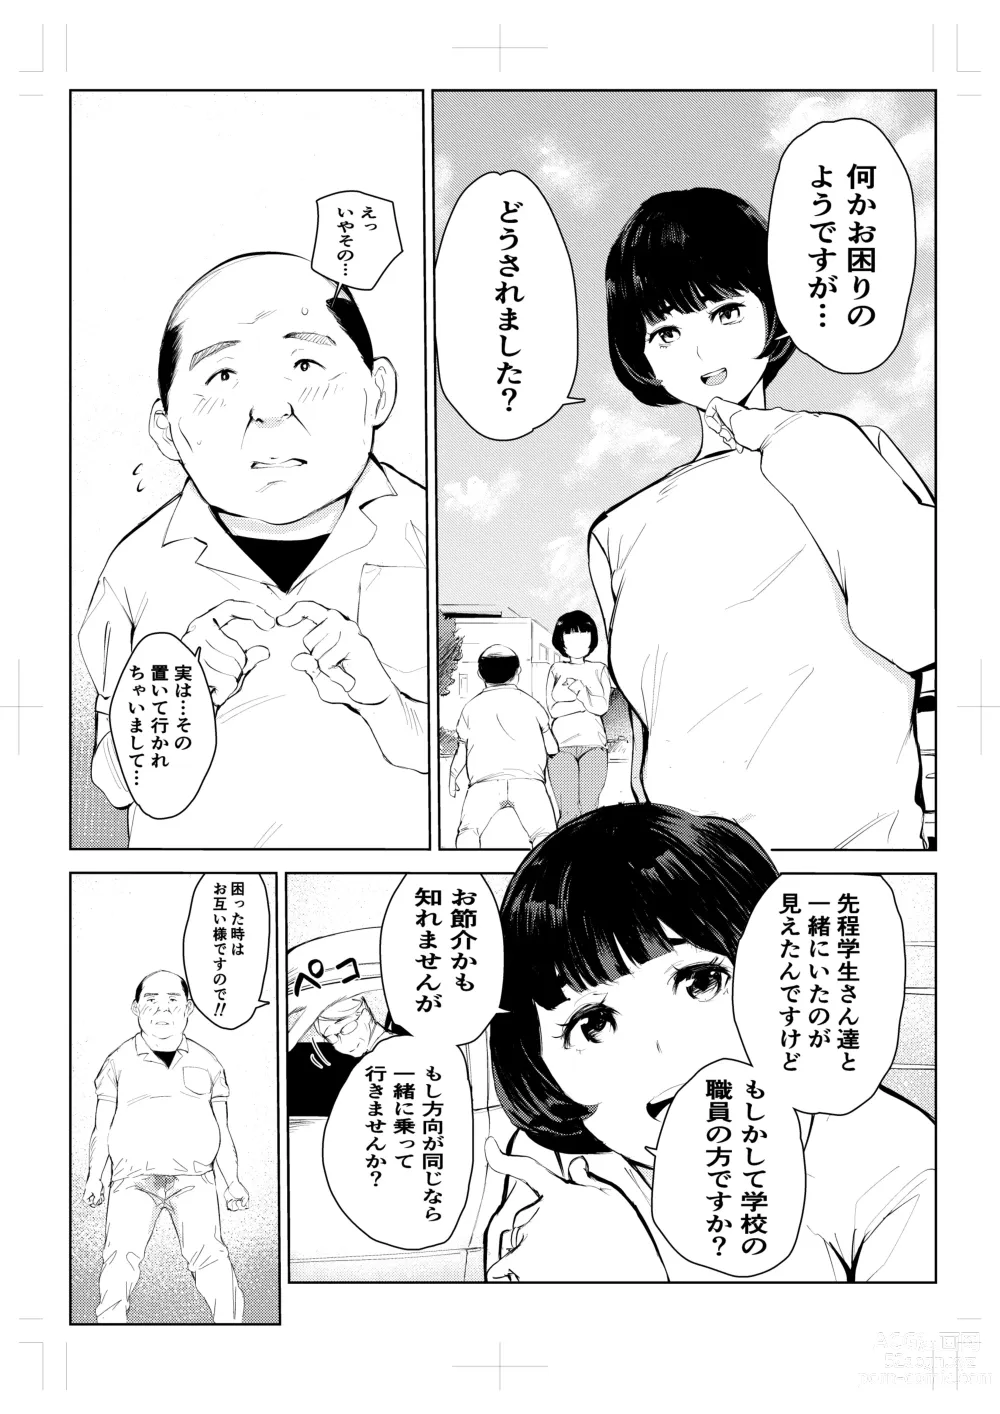 Page 16 of doujinshi 40-sai no Mahoutsukai 4